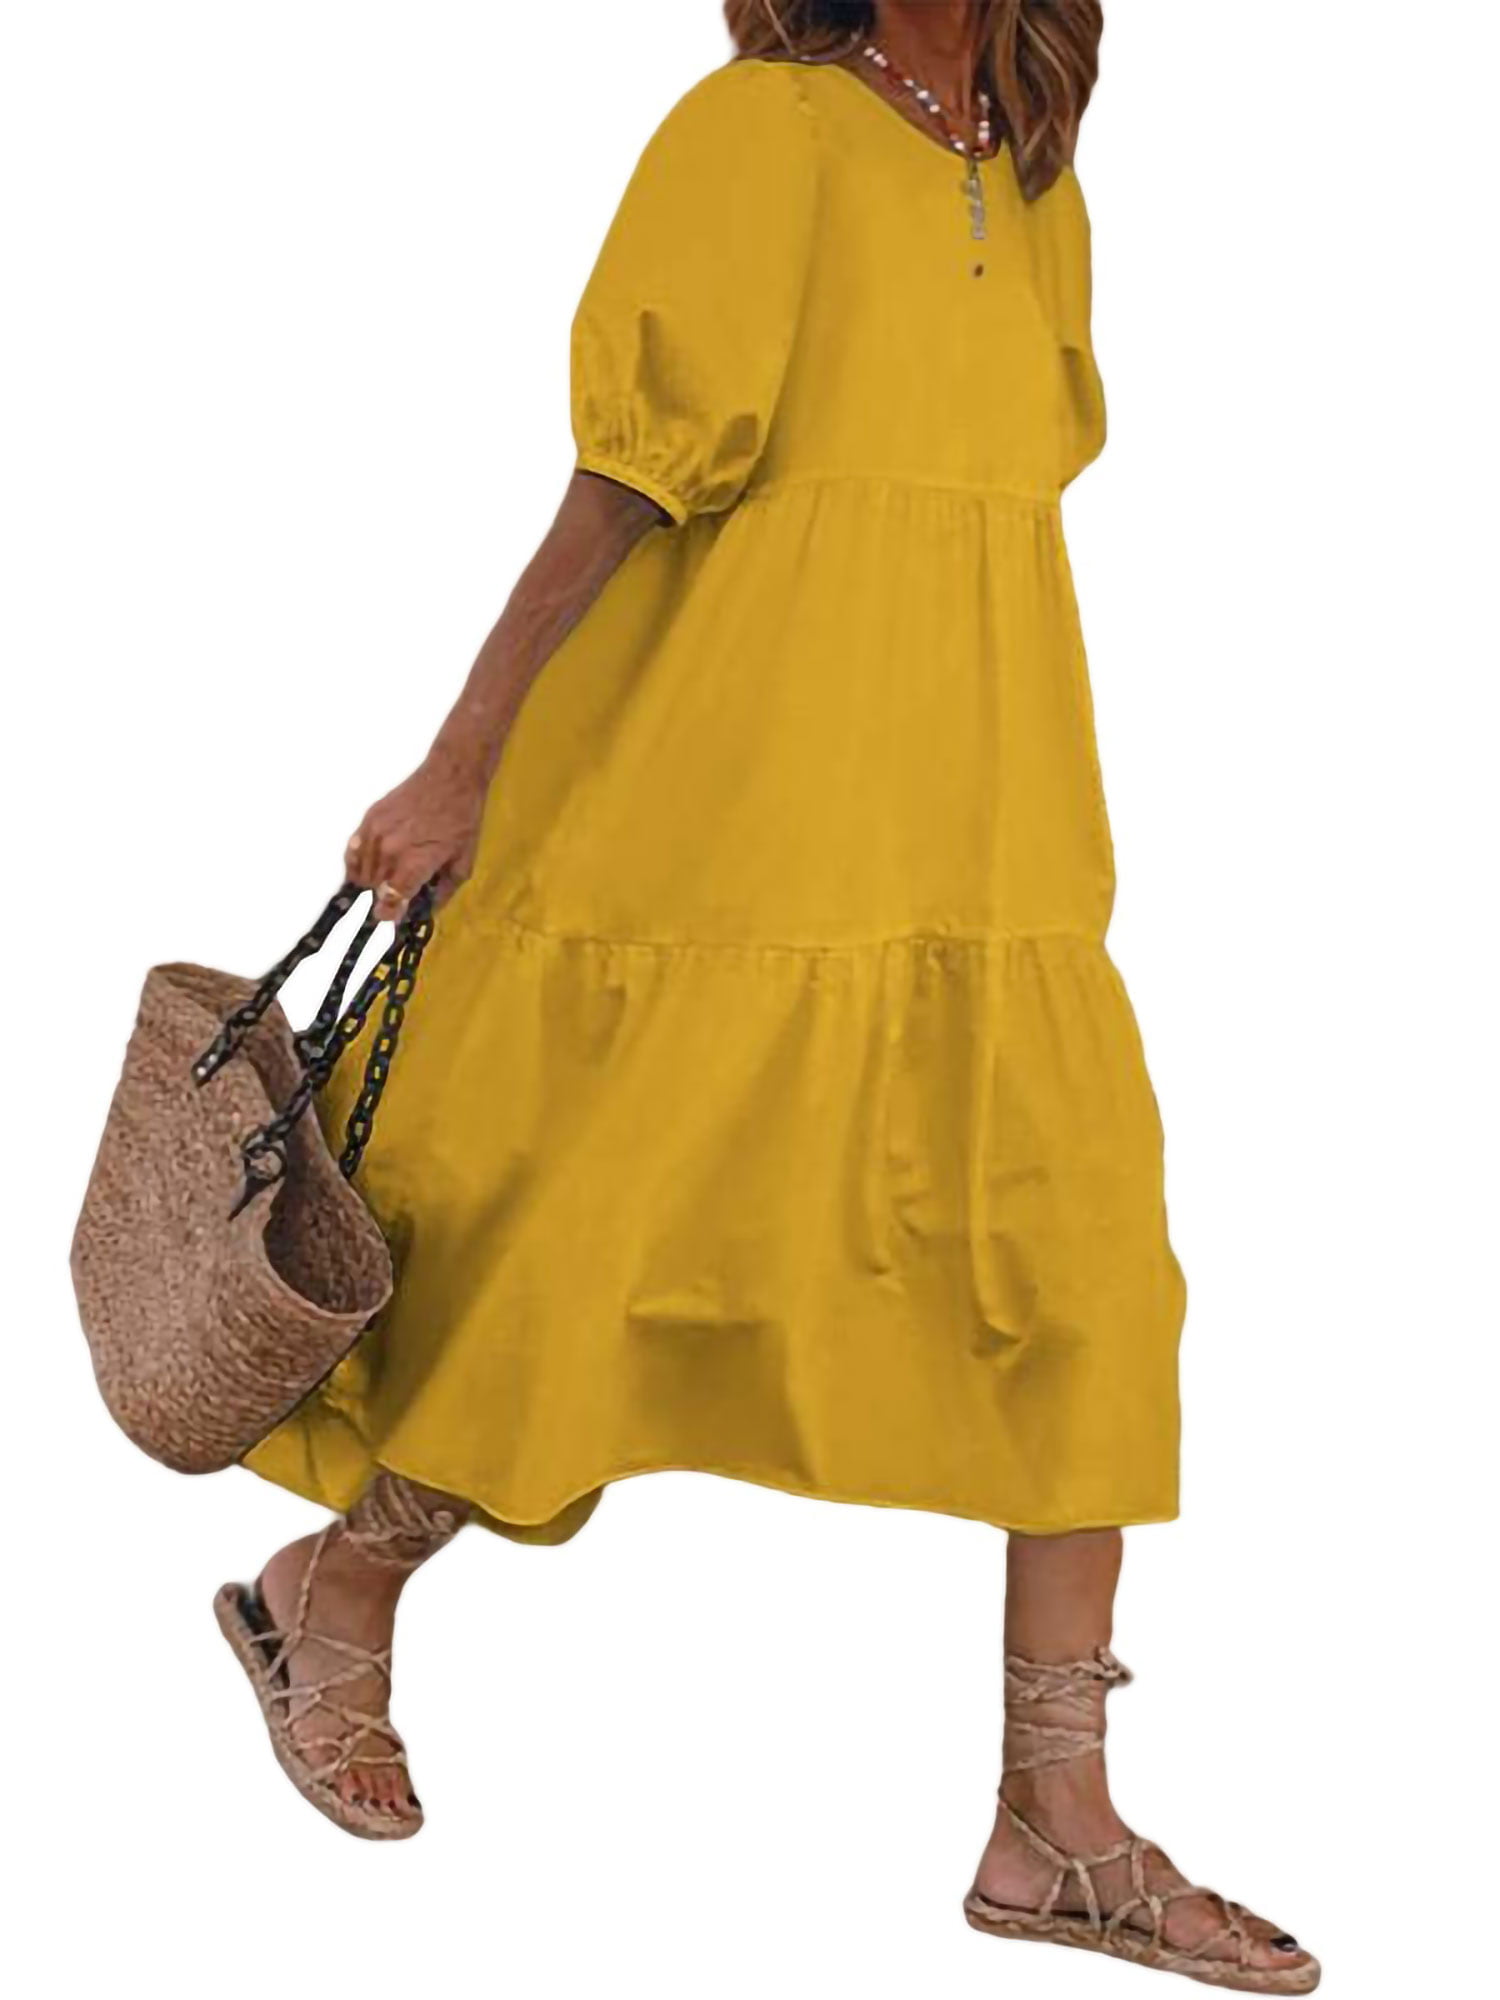 Loose Baggy Dress for Women Casual Summer Puff Dress Bohemian Beach Holiday Sundress - Walmart.com